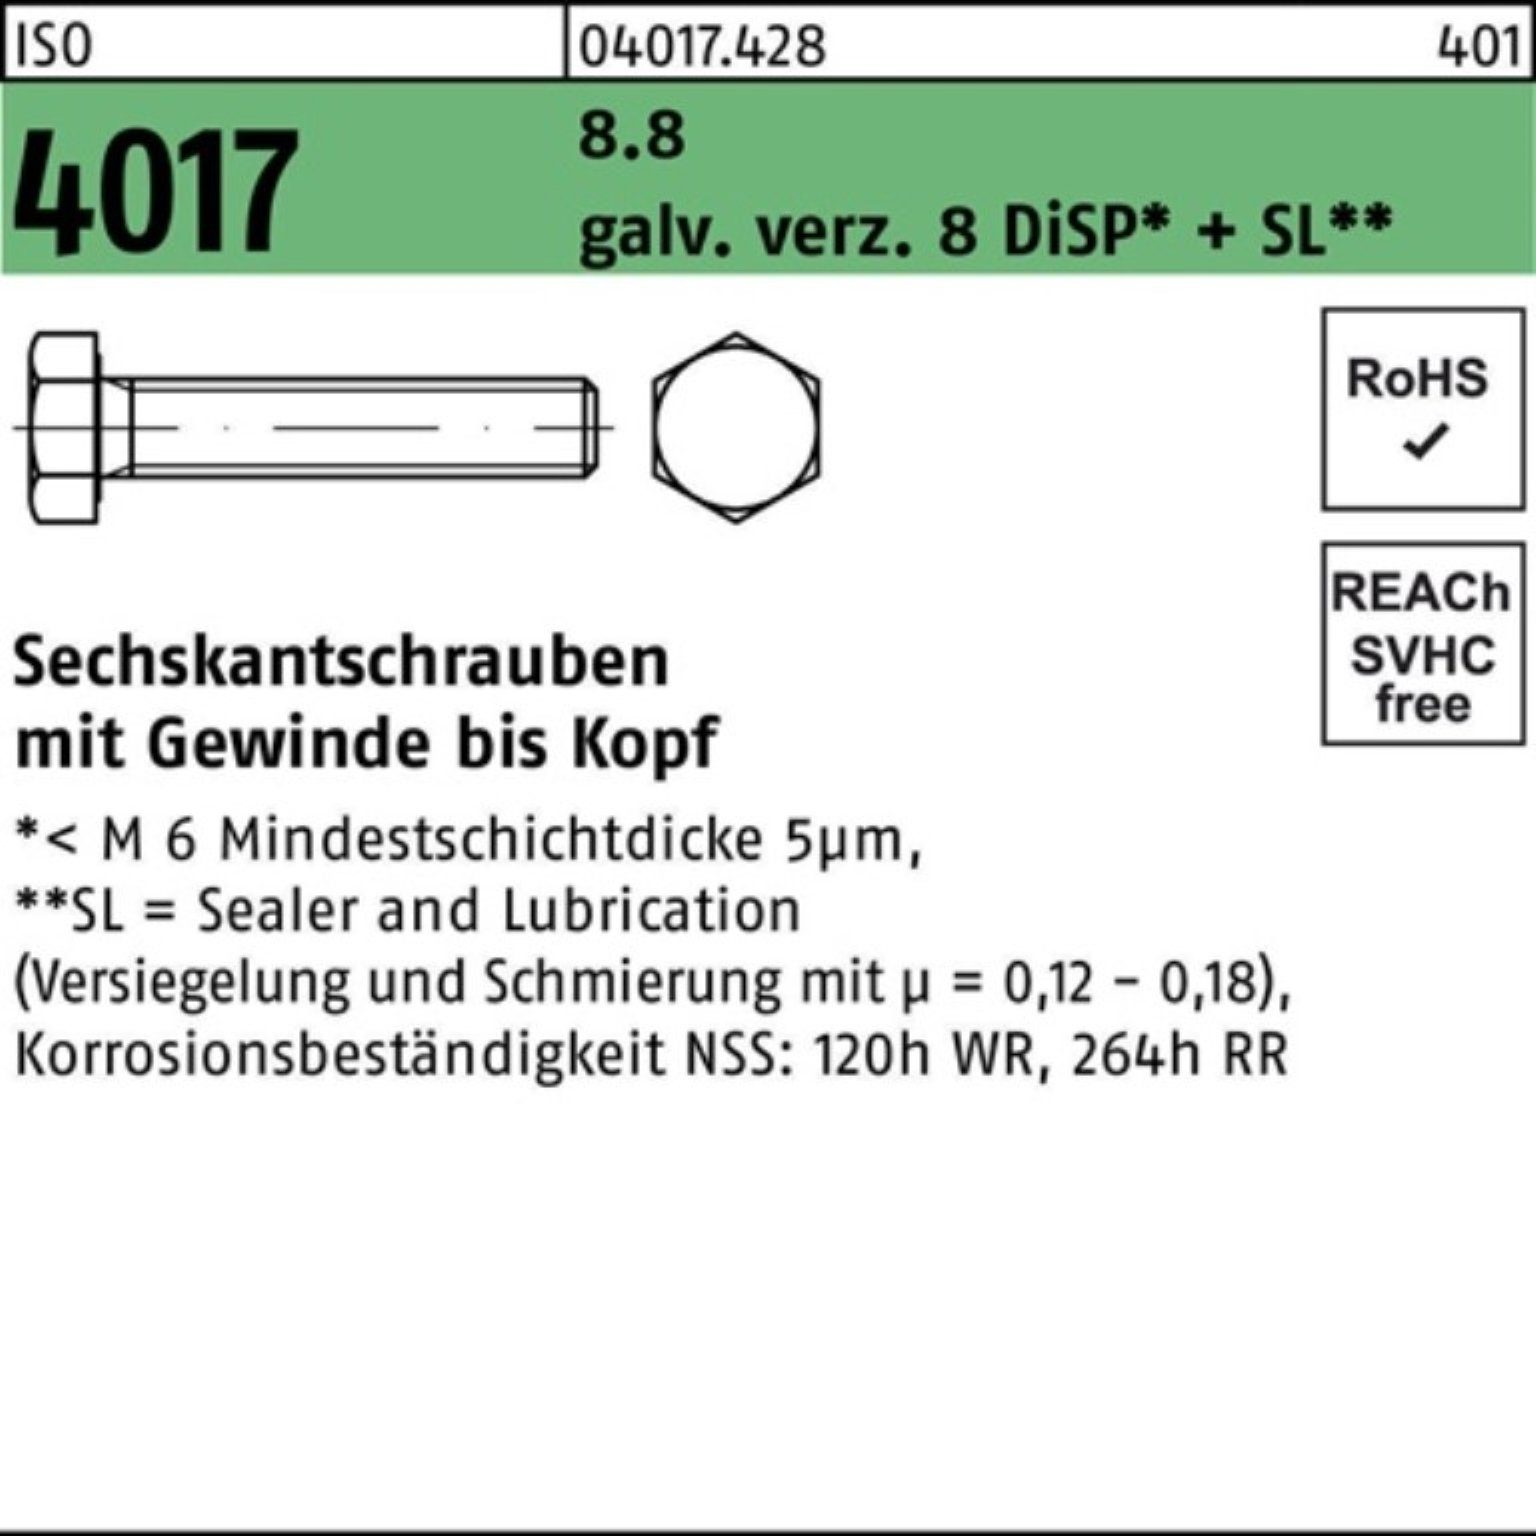 Bufab Sechskantschraube 100er Pack Sechskantschraube ISO 4017 VG M10x 55 8.8 galv.verz. 8 DiSP